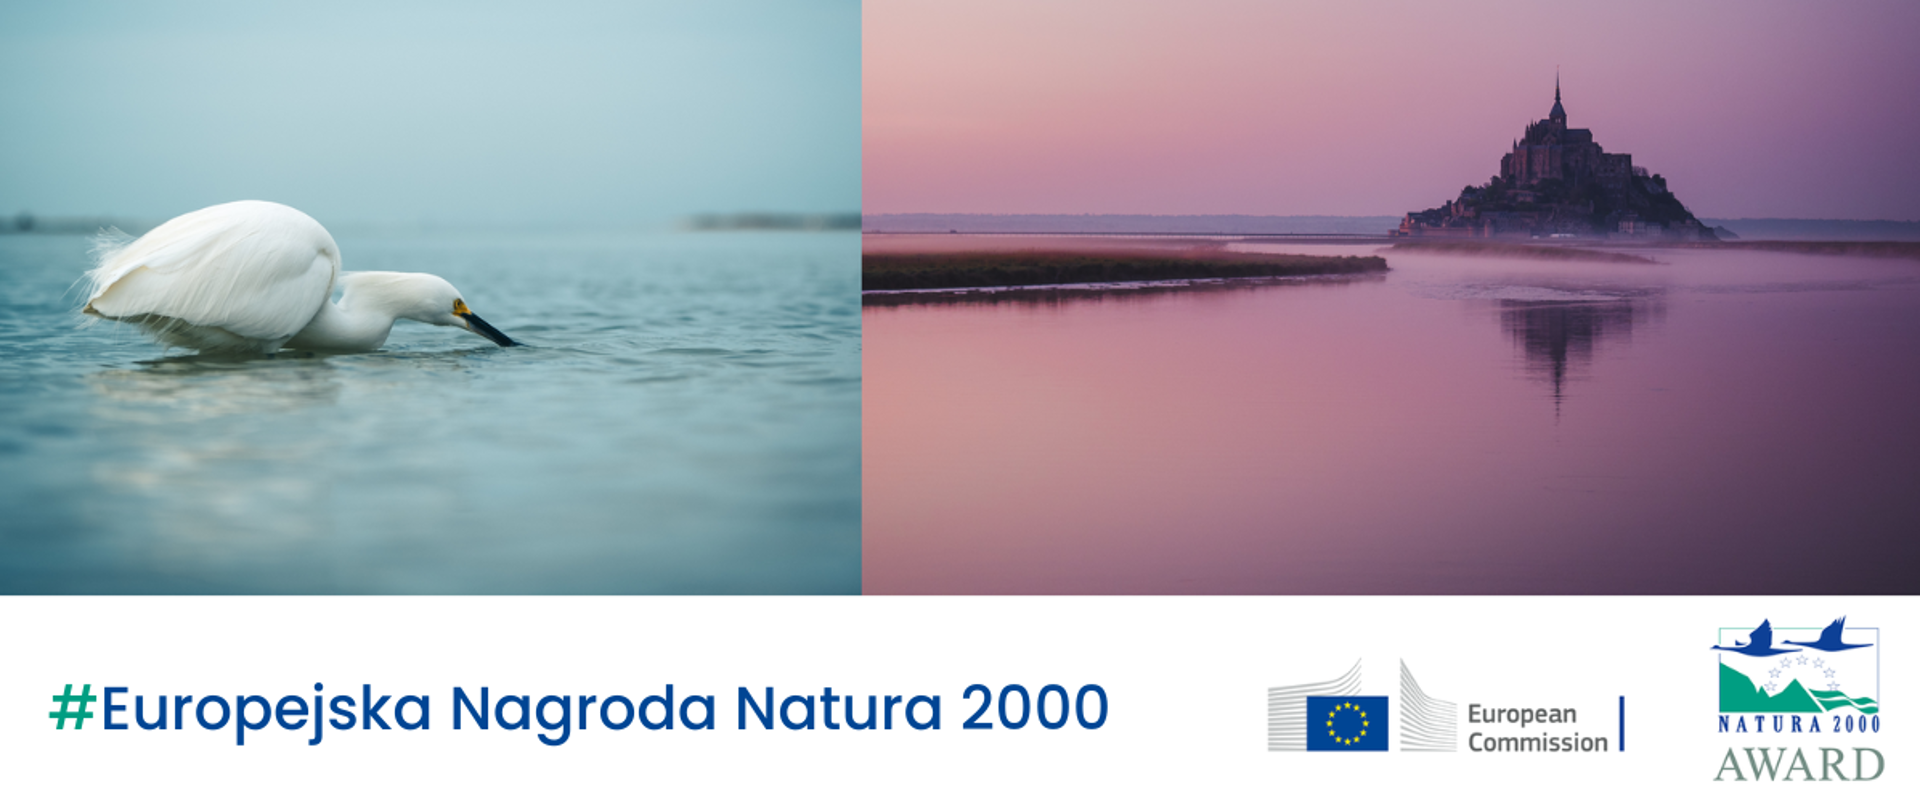 Dwa zdjęcia - po lewej stronie biały ptak na wodzie, po prawej w oddali wyspa z budowlą. W dolnej części logotypy i napis Europejska Nagroda Natura 2000